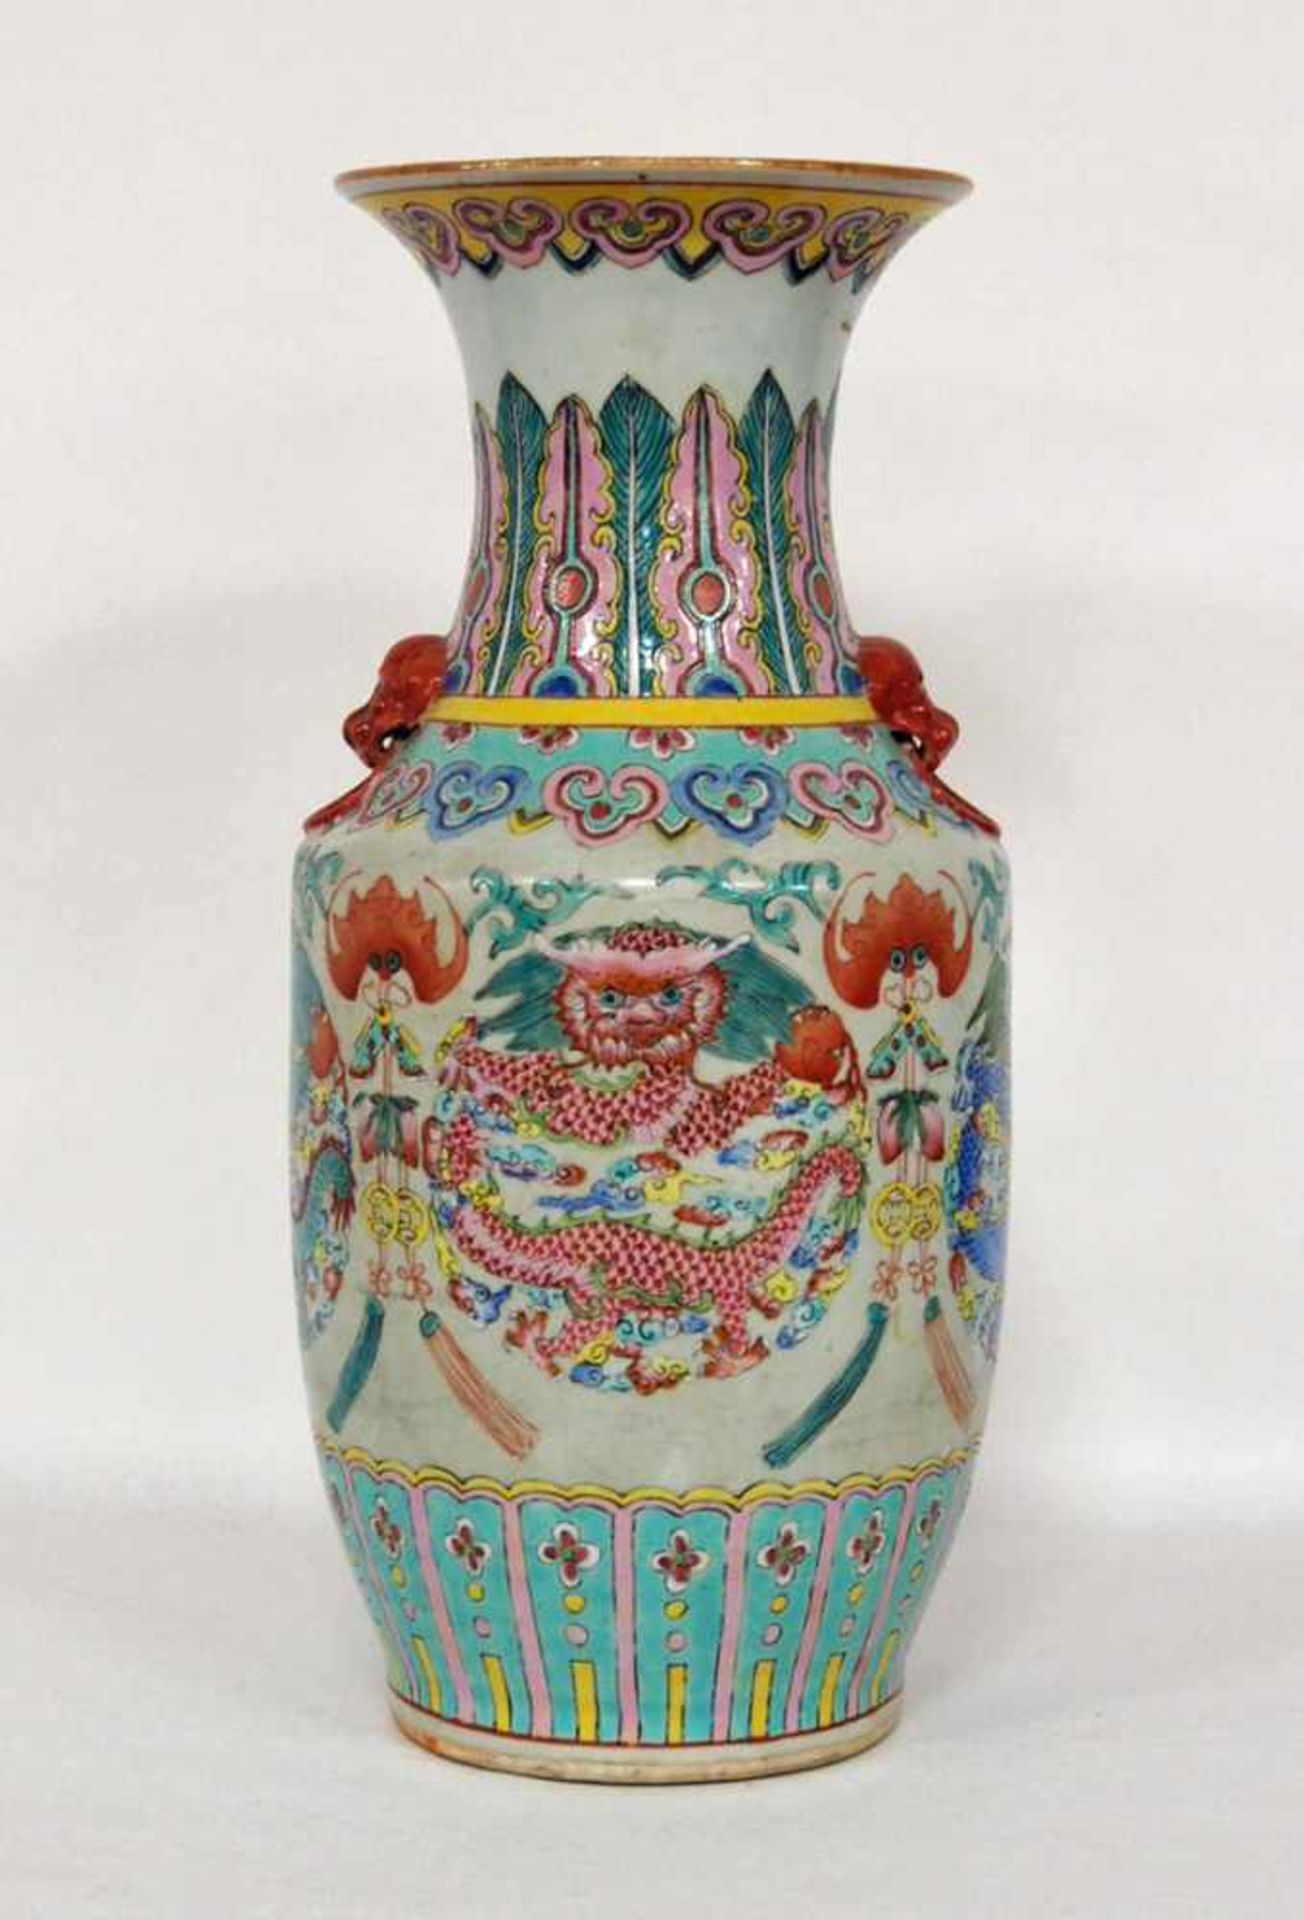 VasePorzellan, Drachendekor und Fledermausdekor, China 19. Jh., Höhe 43 cm